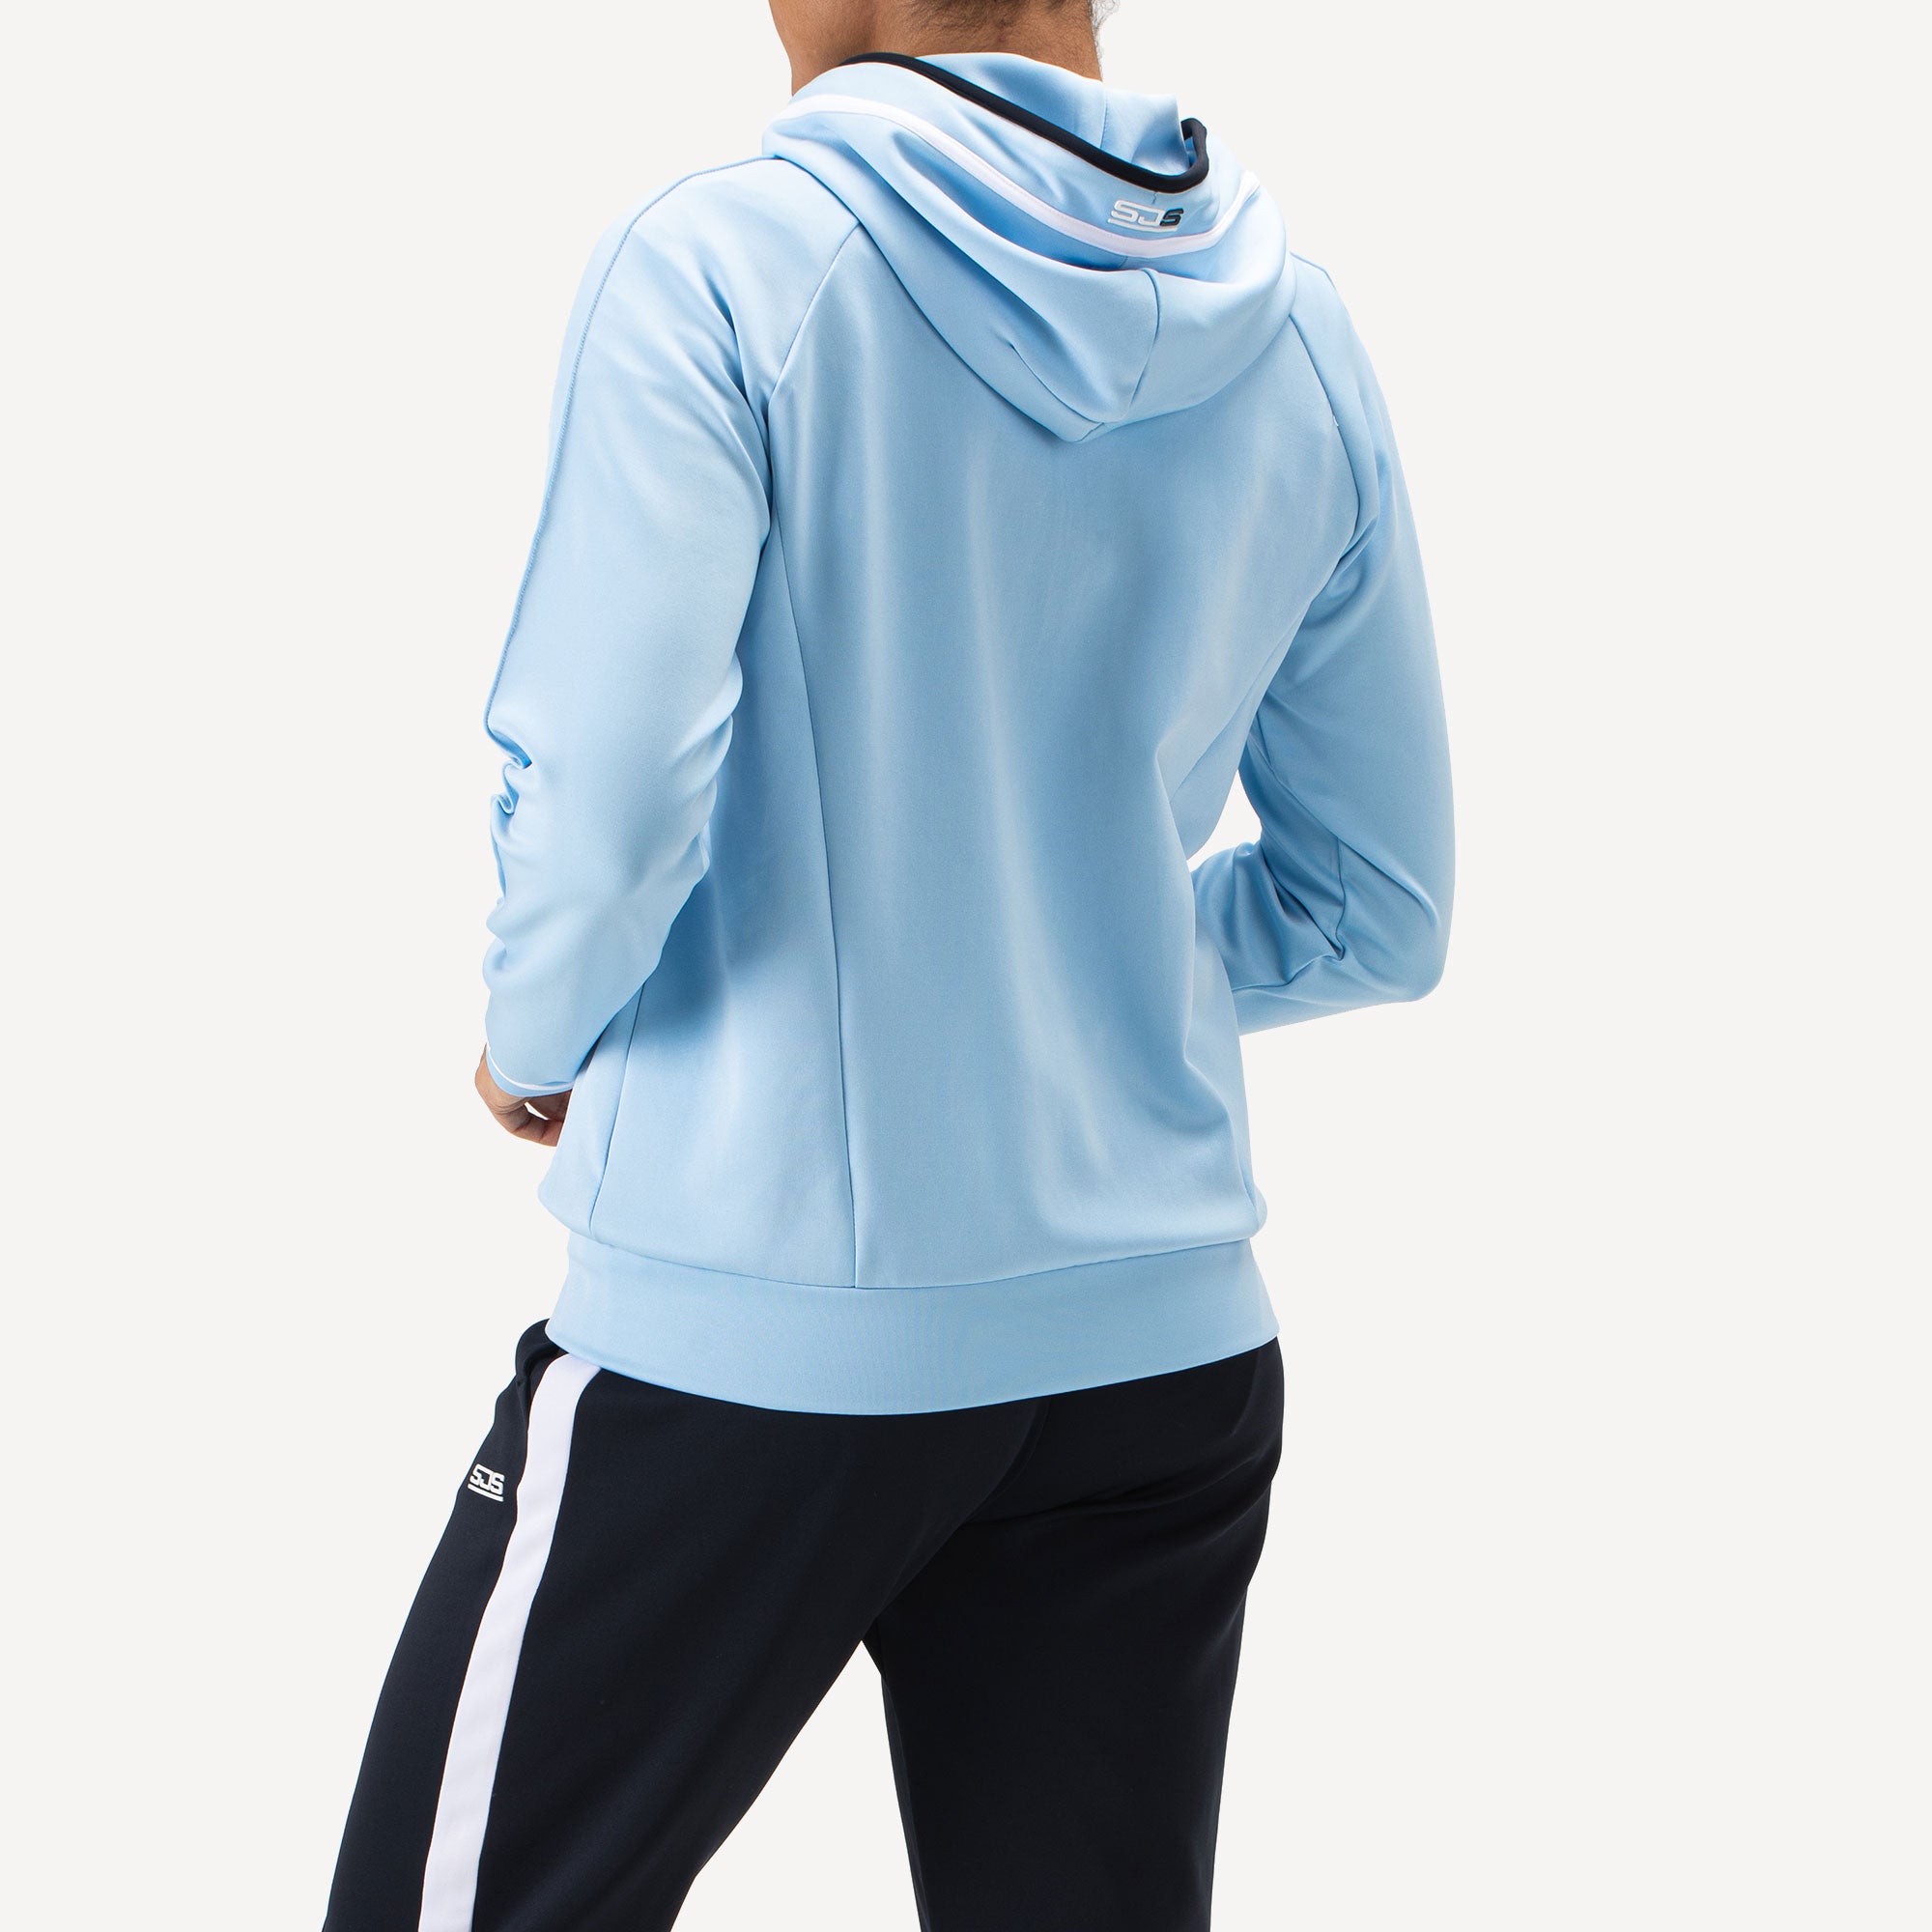 Sjeng Sports Fathia Women's Hooded Tennis Jacket - Blue (2)